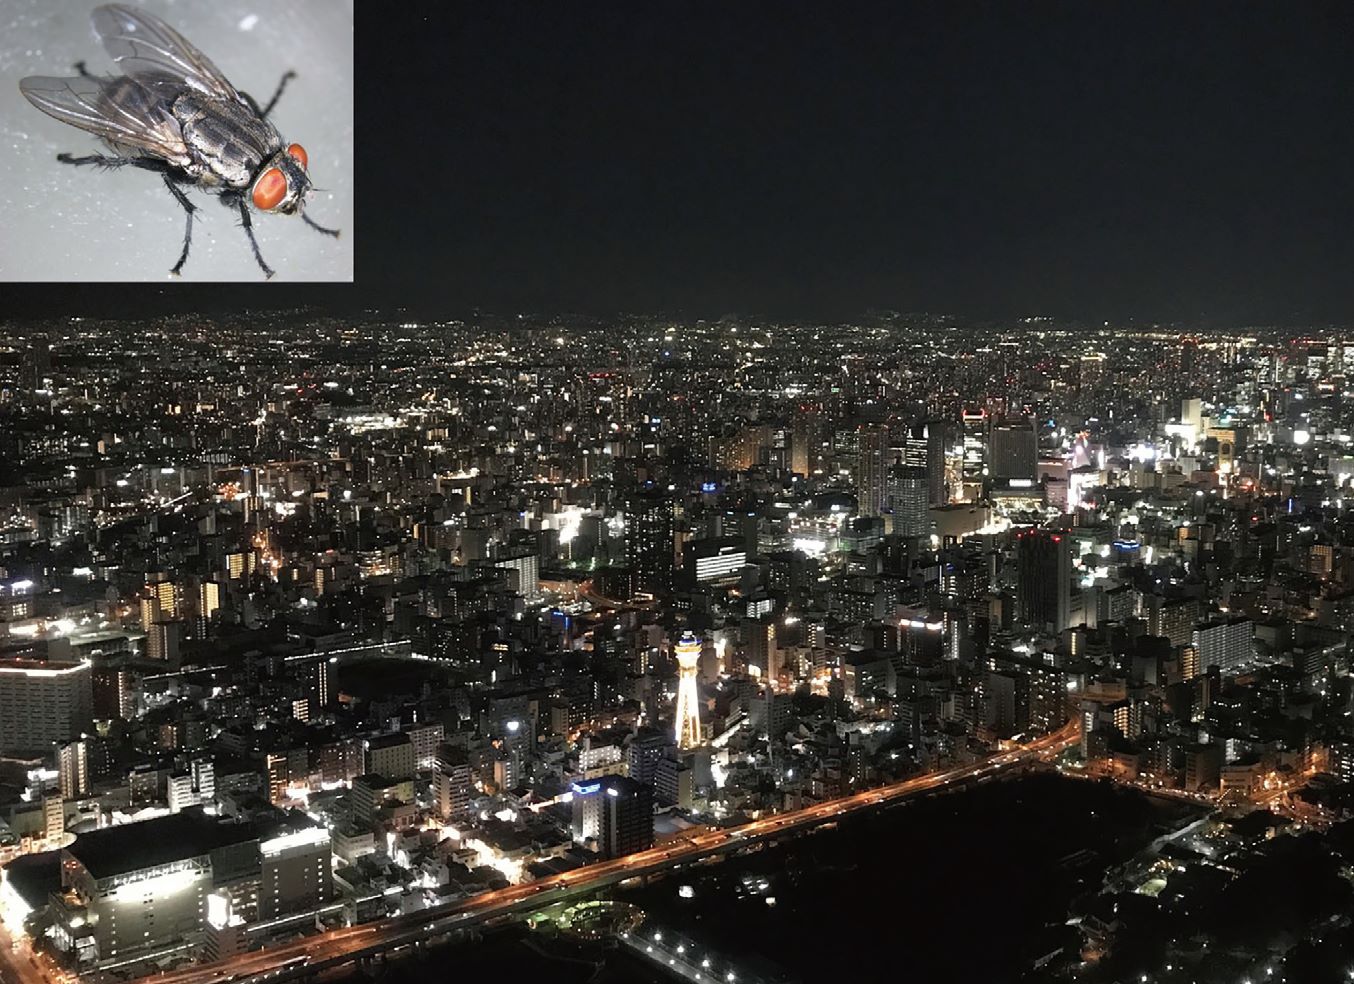 ナミニクバエの成虫と大阪の夜景